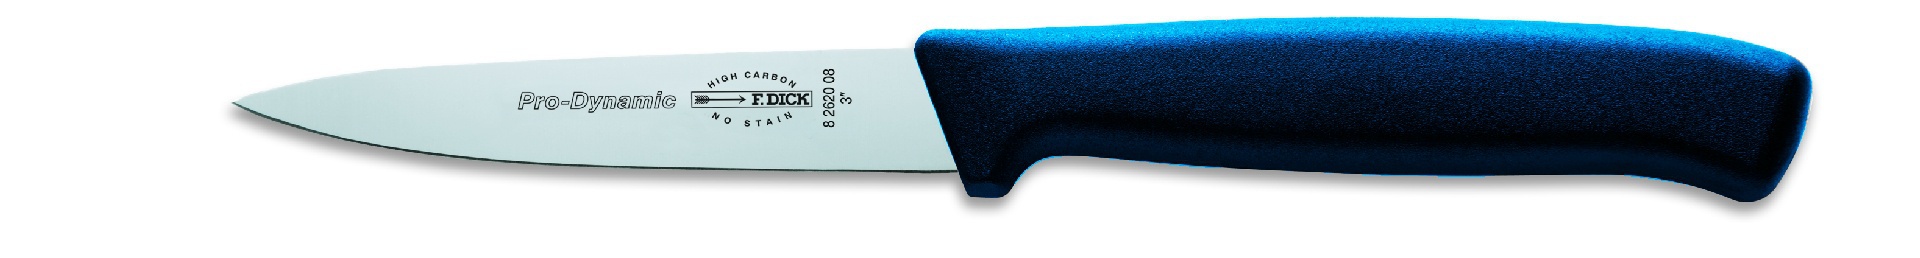 Kuchyňský nůž, modrý v délce 8 cm